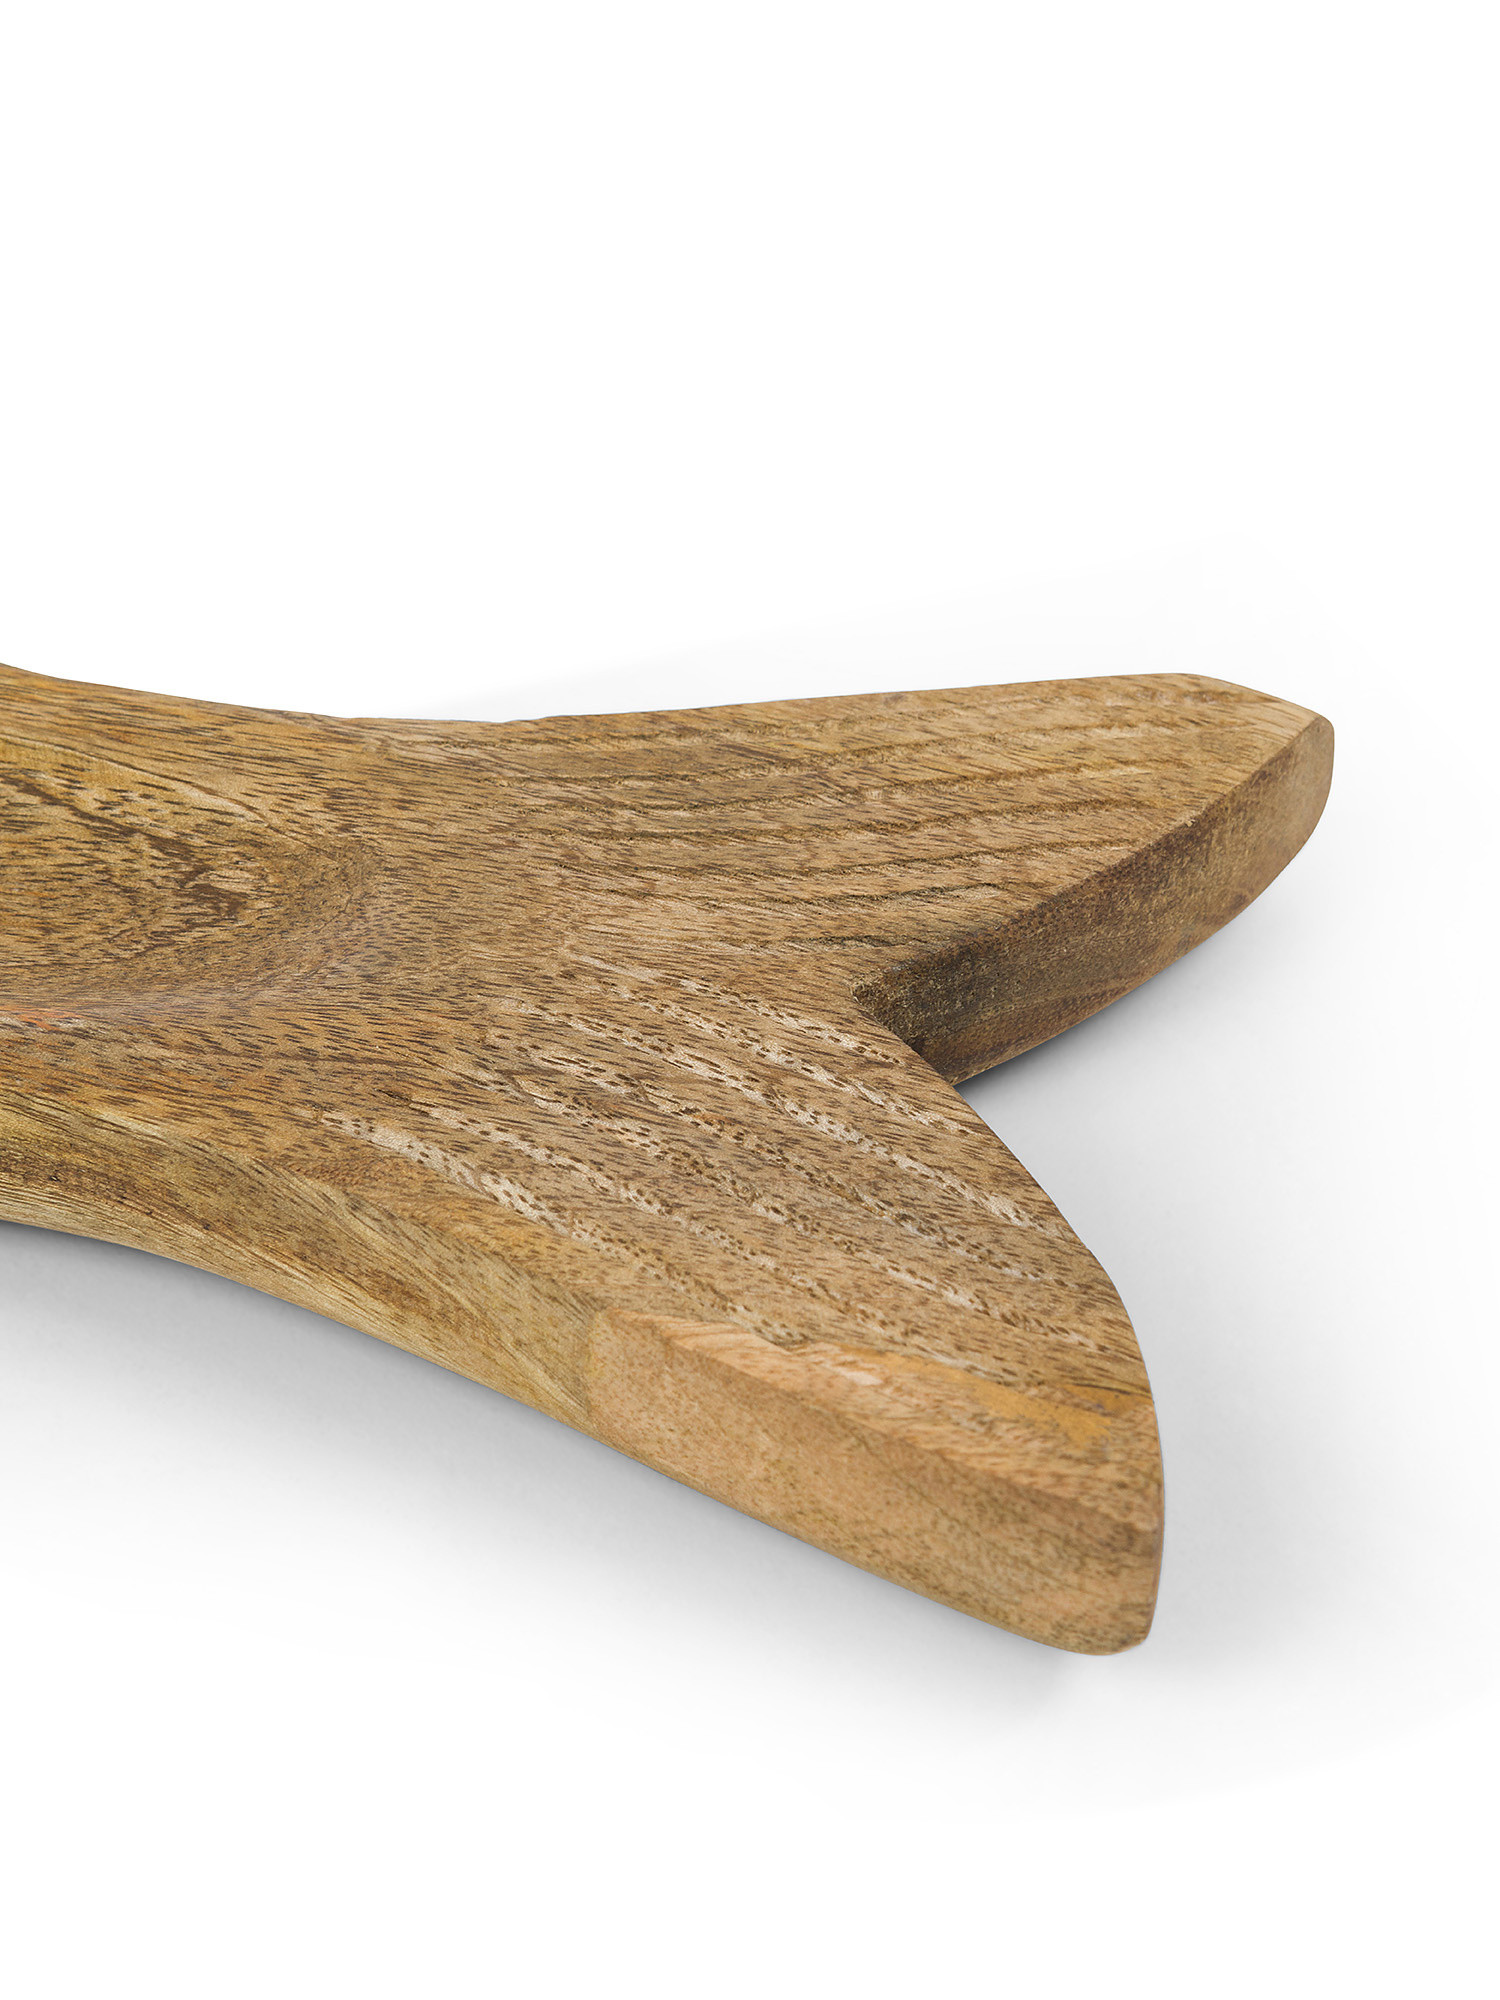 Piattino in legno di mango a pesce, Marrone, large image number 1